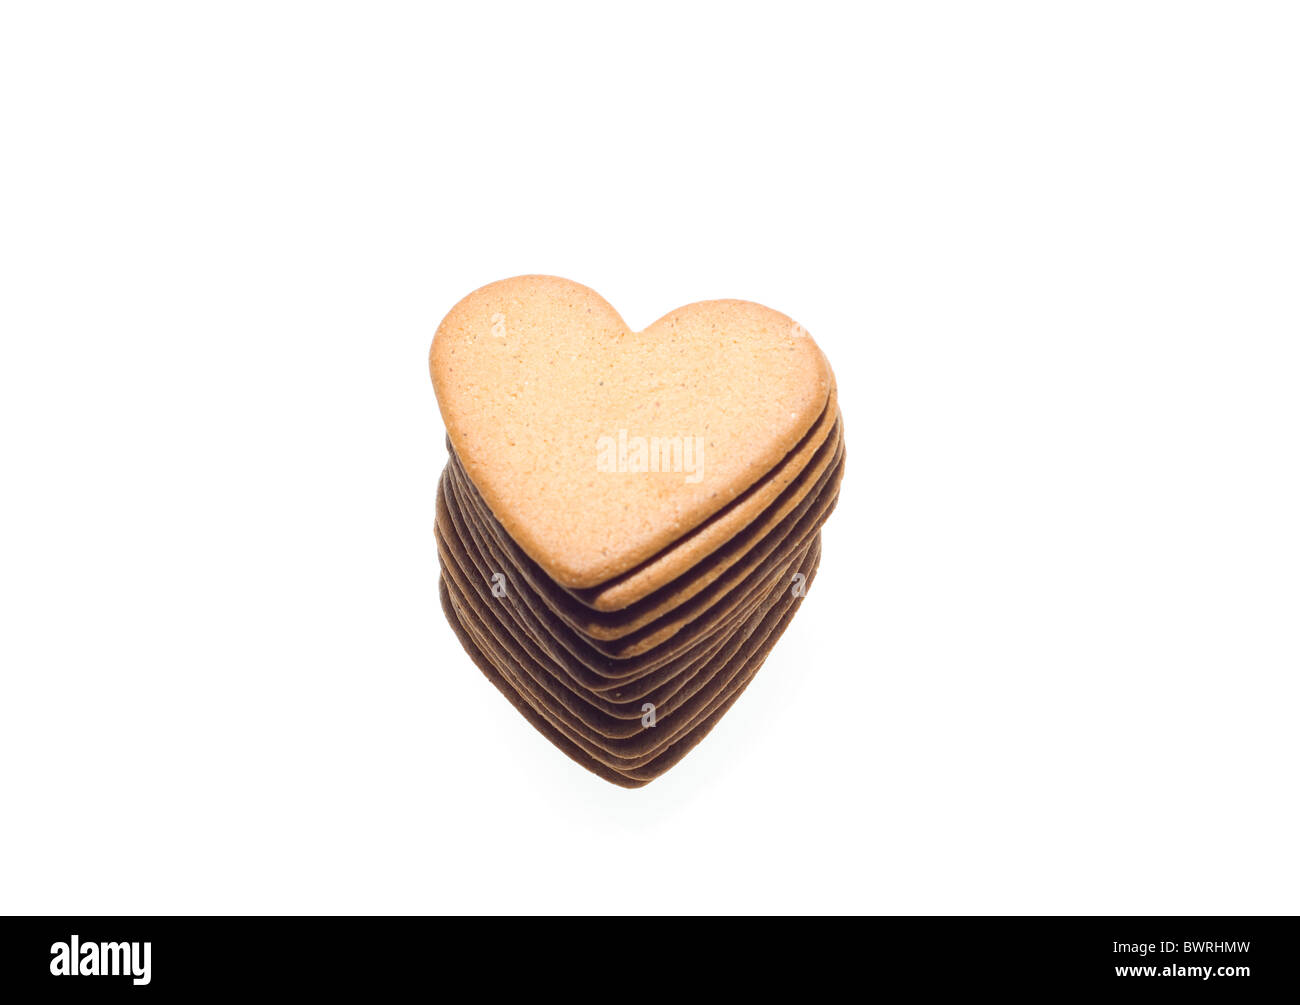 Las galletas de jengibre, corazón formado Foto de stock